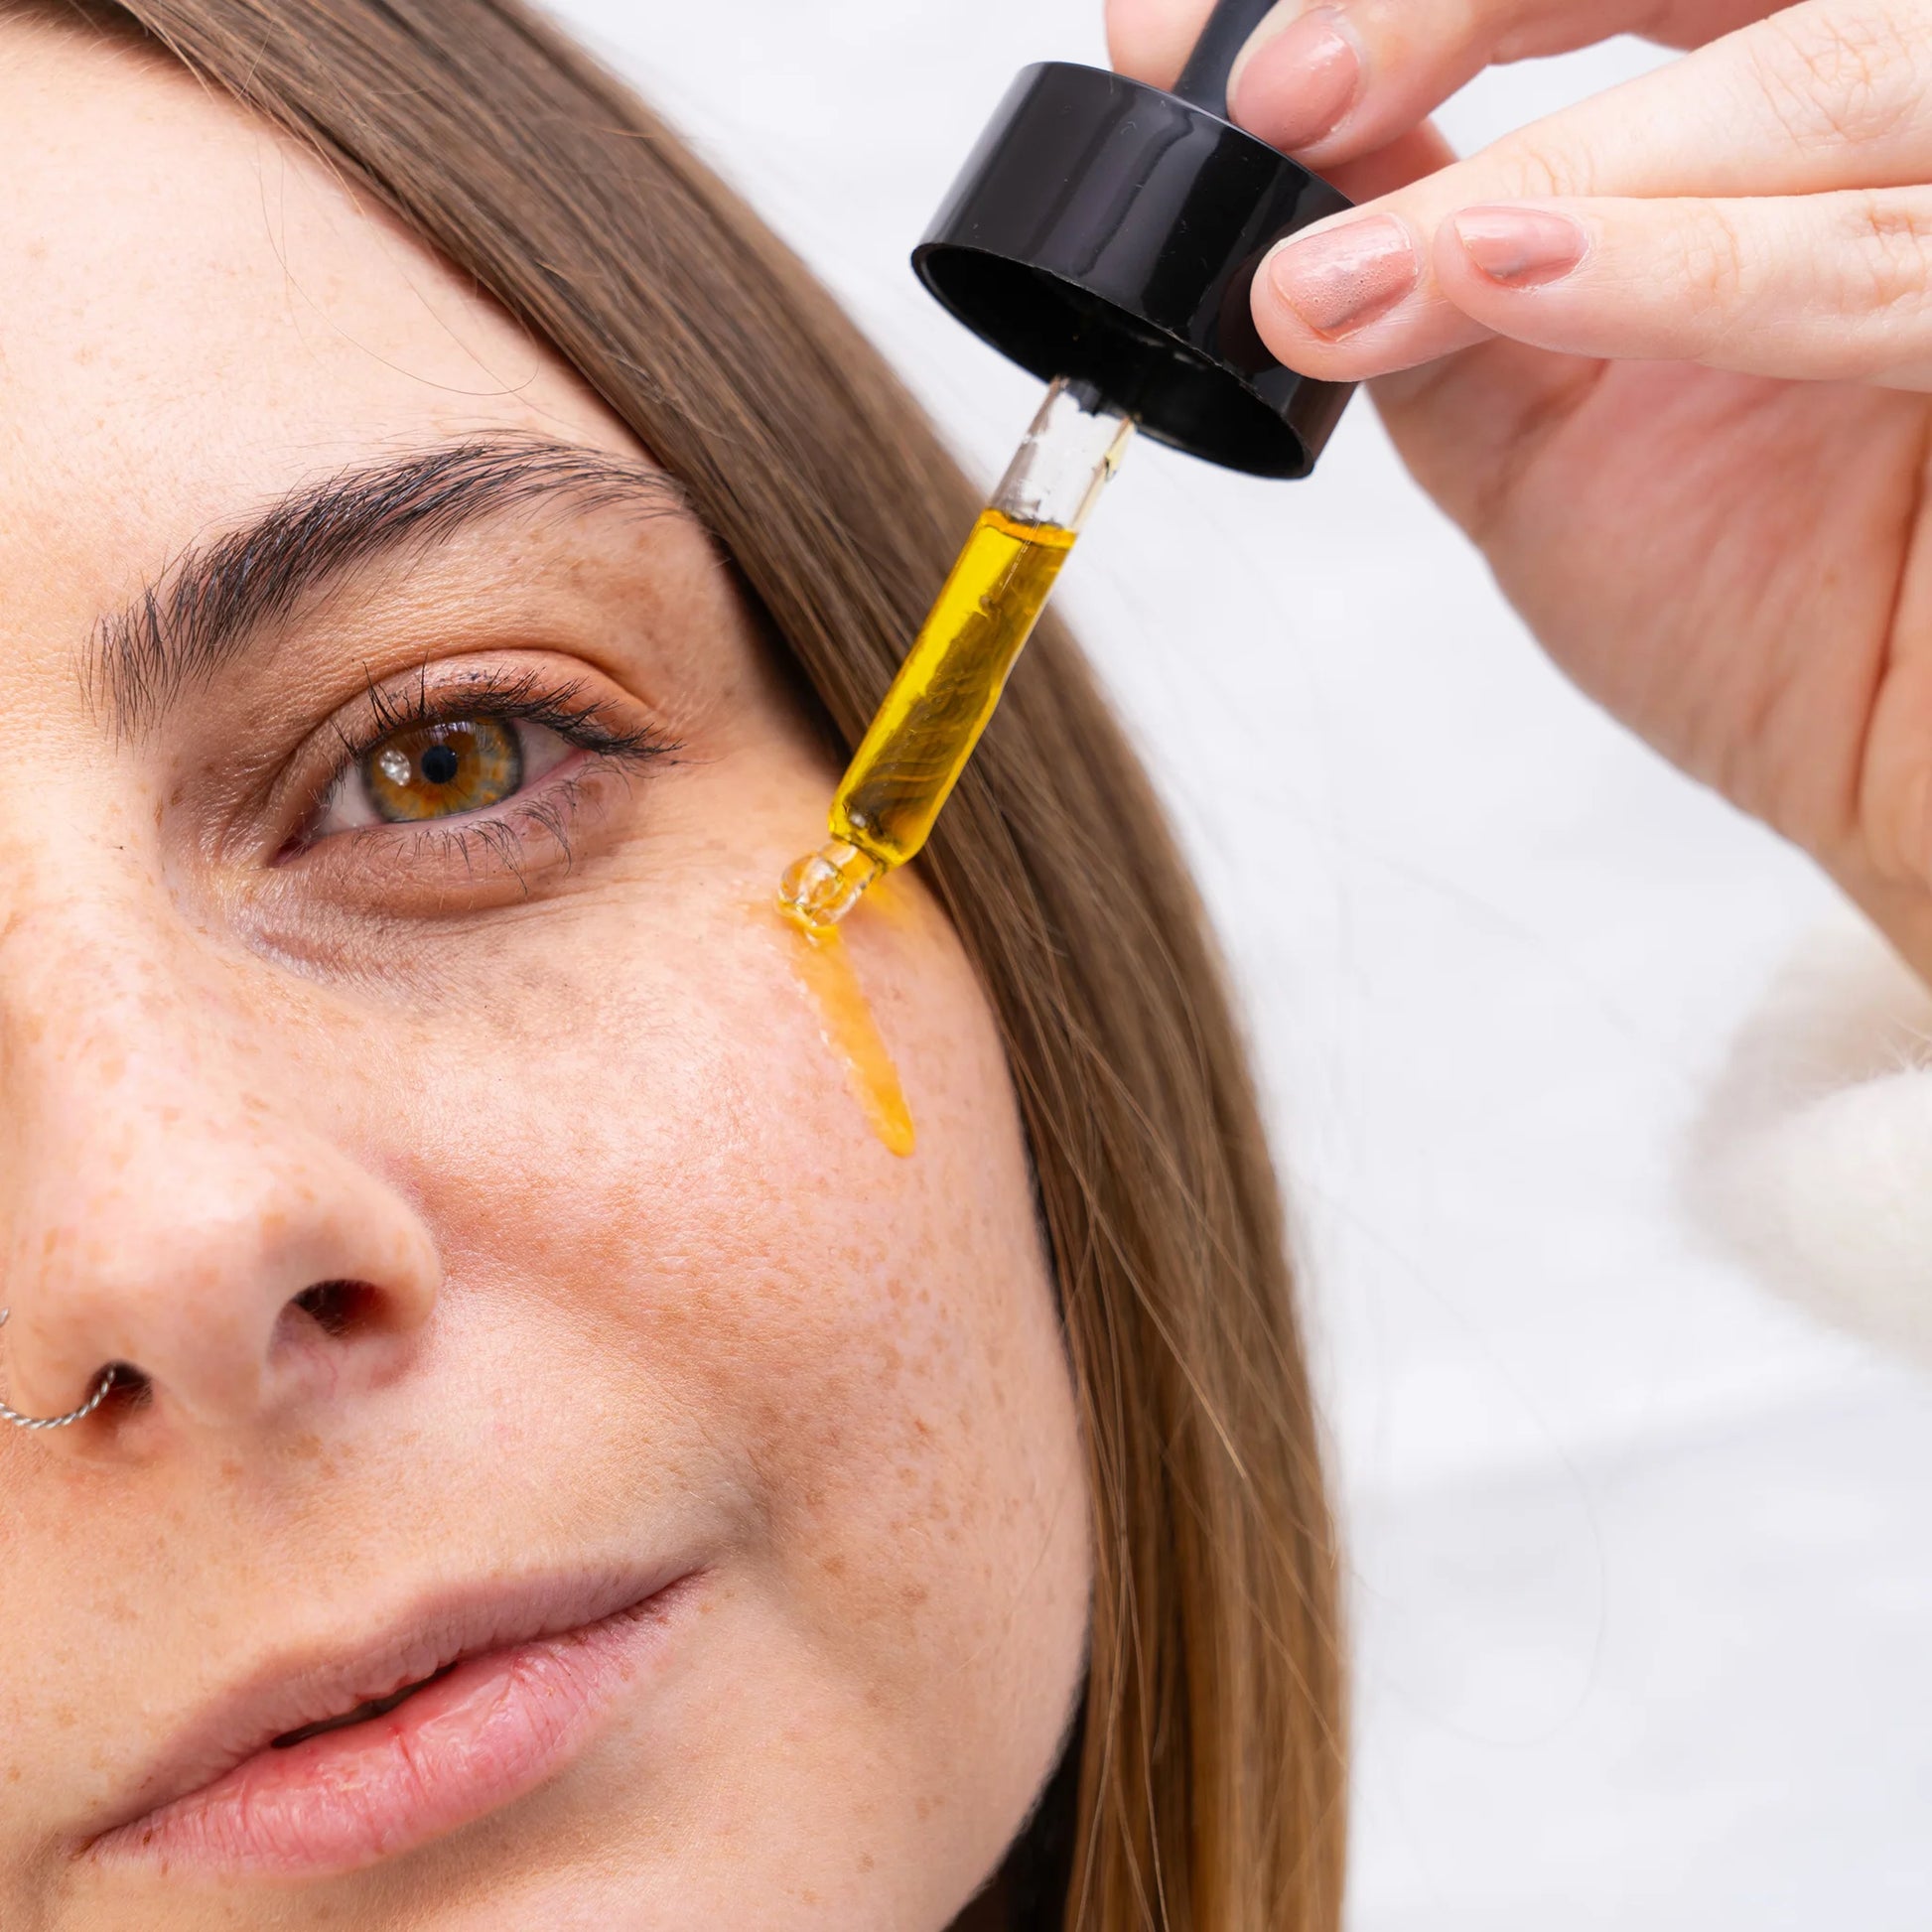 Une femme applique de l'huile CBD Nordic Oil sur son visage à l'aide d'un doseur.